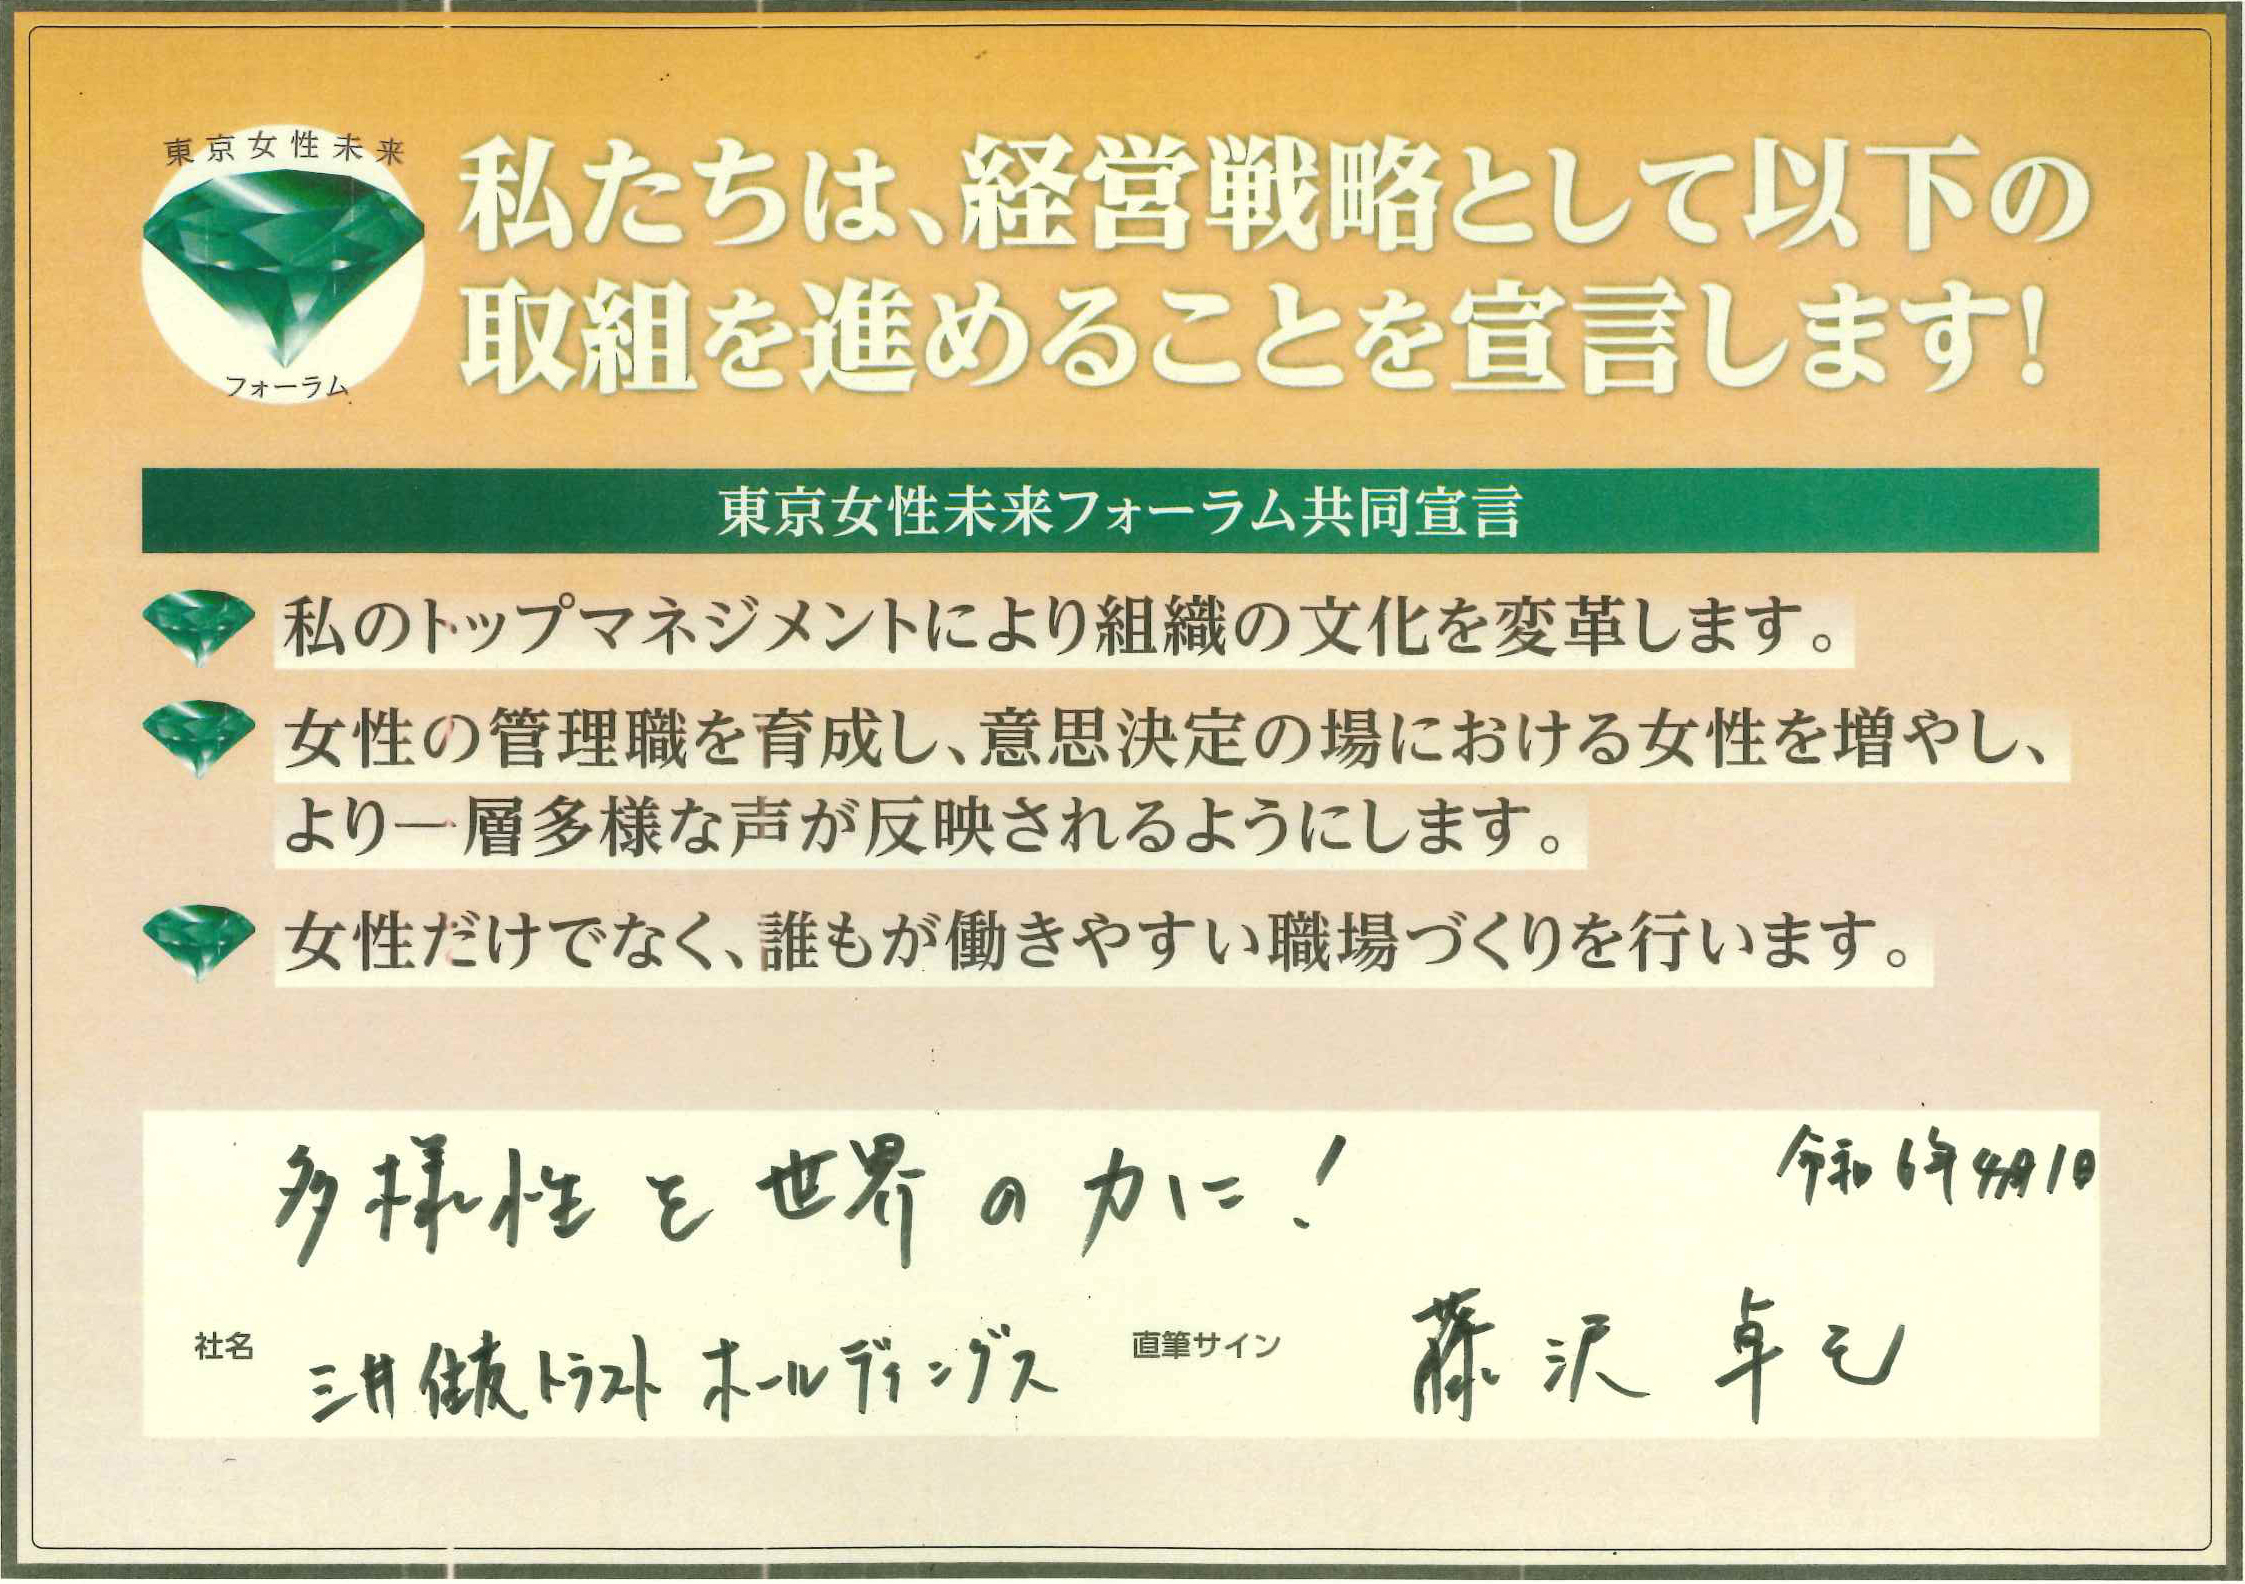 三井住友トラスト・ホールディングス株式会社 共同宣言パネル